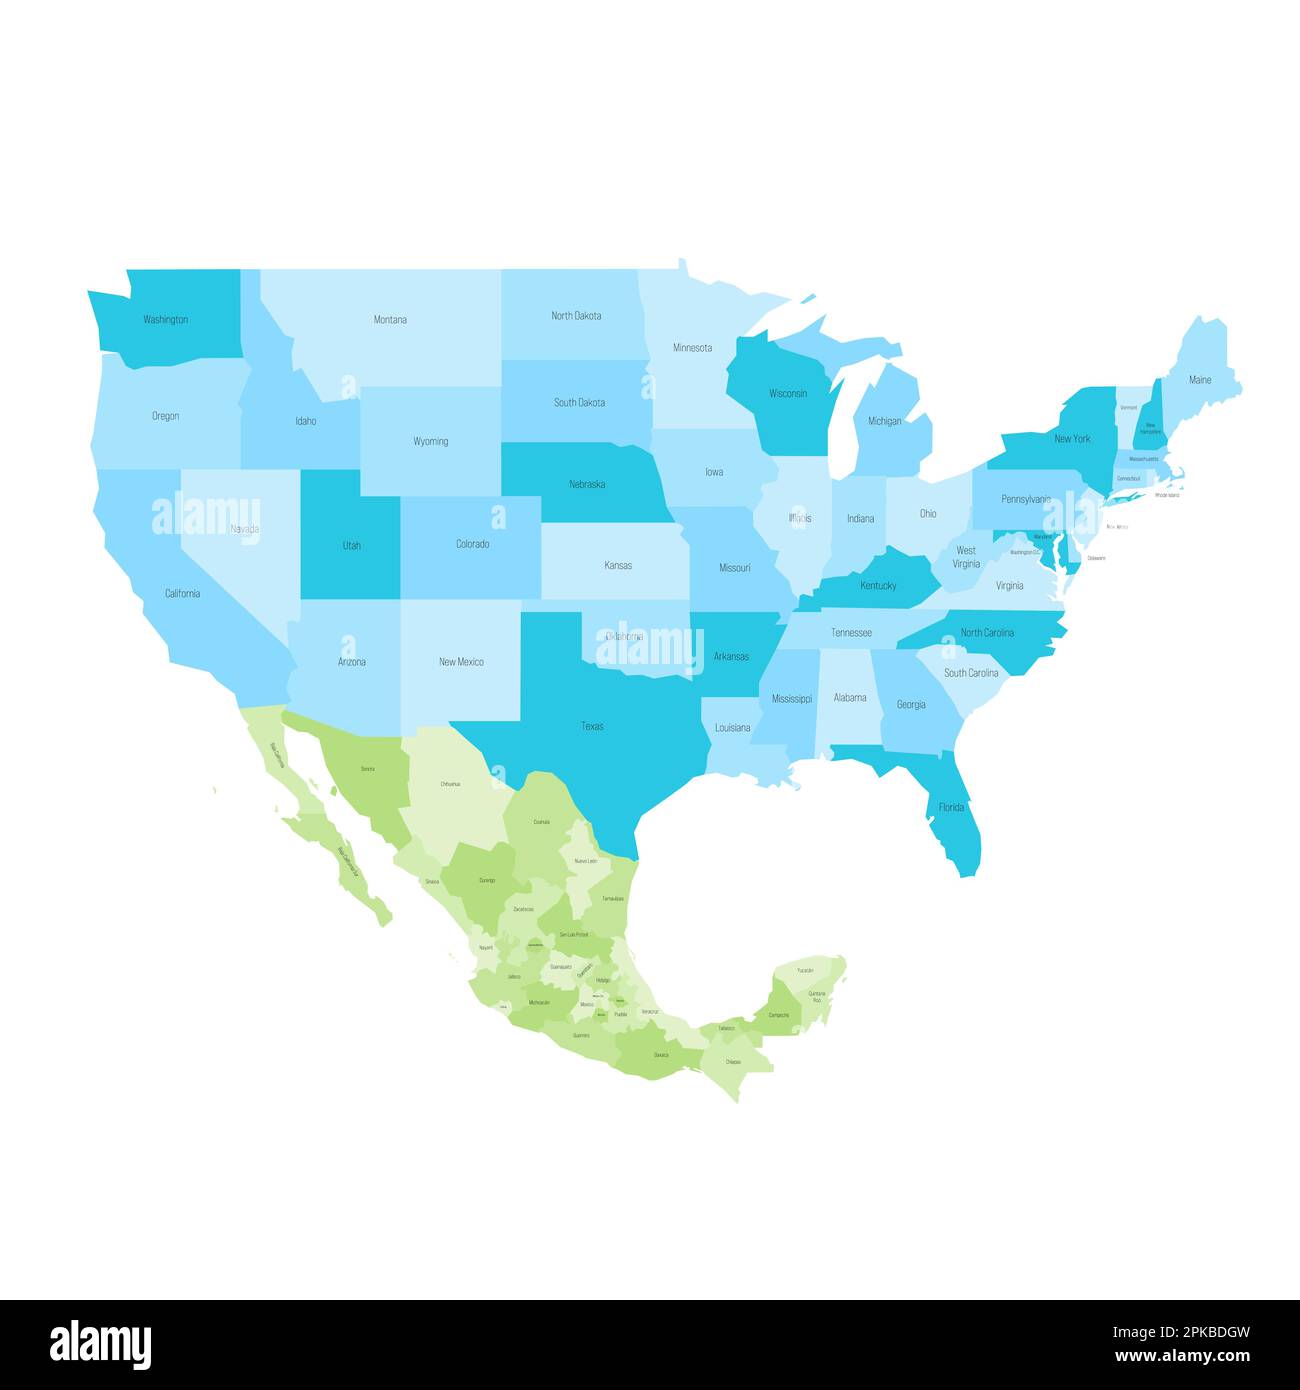 Mappa politica degli Stati Uniti e del Messico delle divisioni amministrative. Mappa vettoriale colorata con etichette. Illustrazione Vettoriale